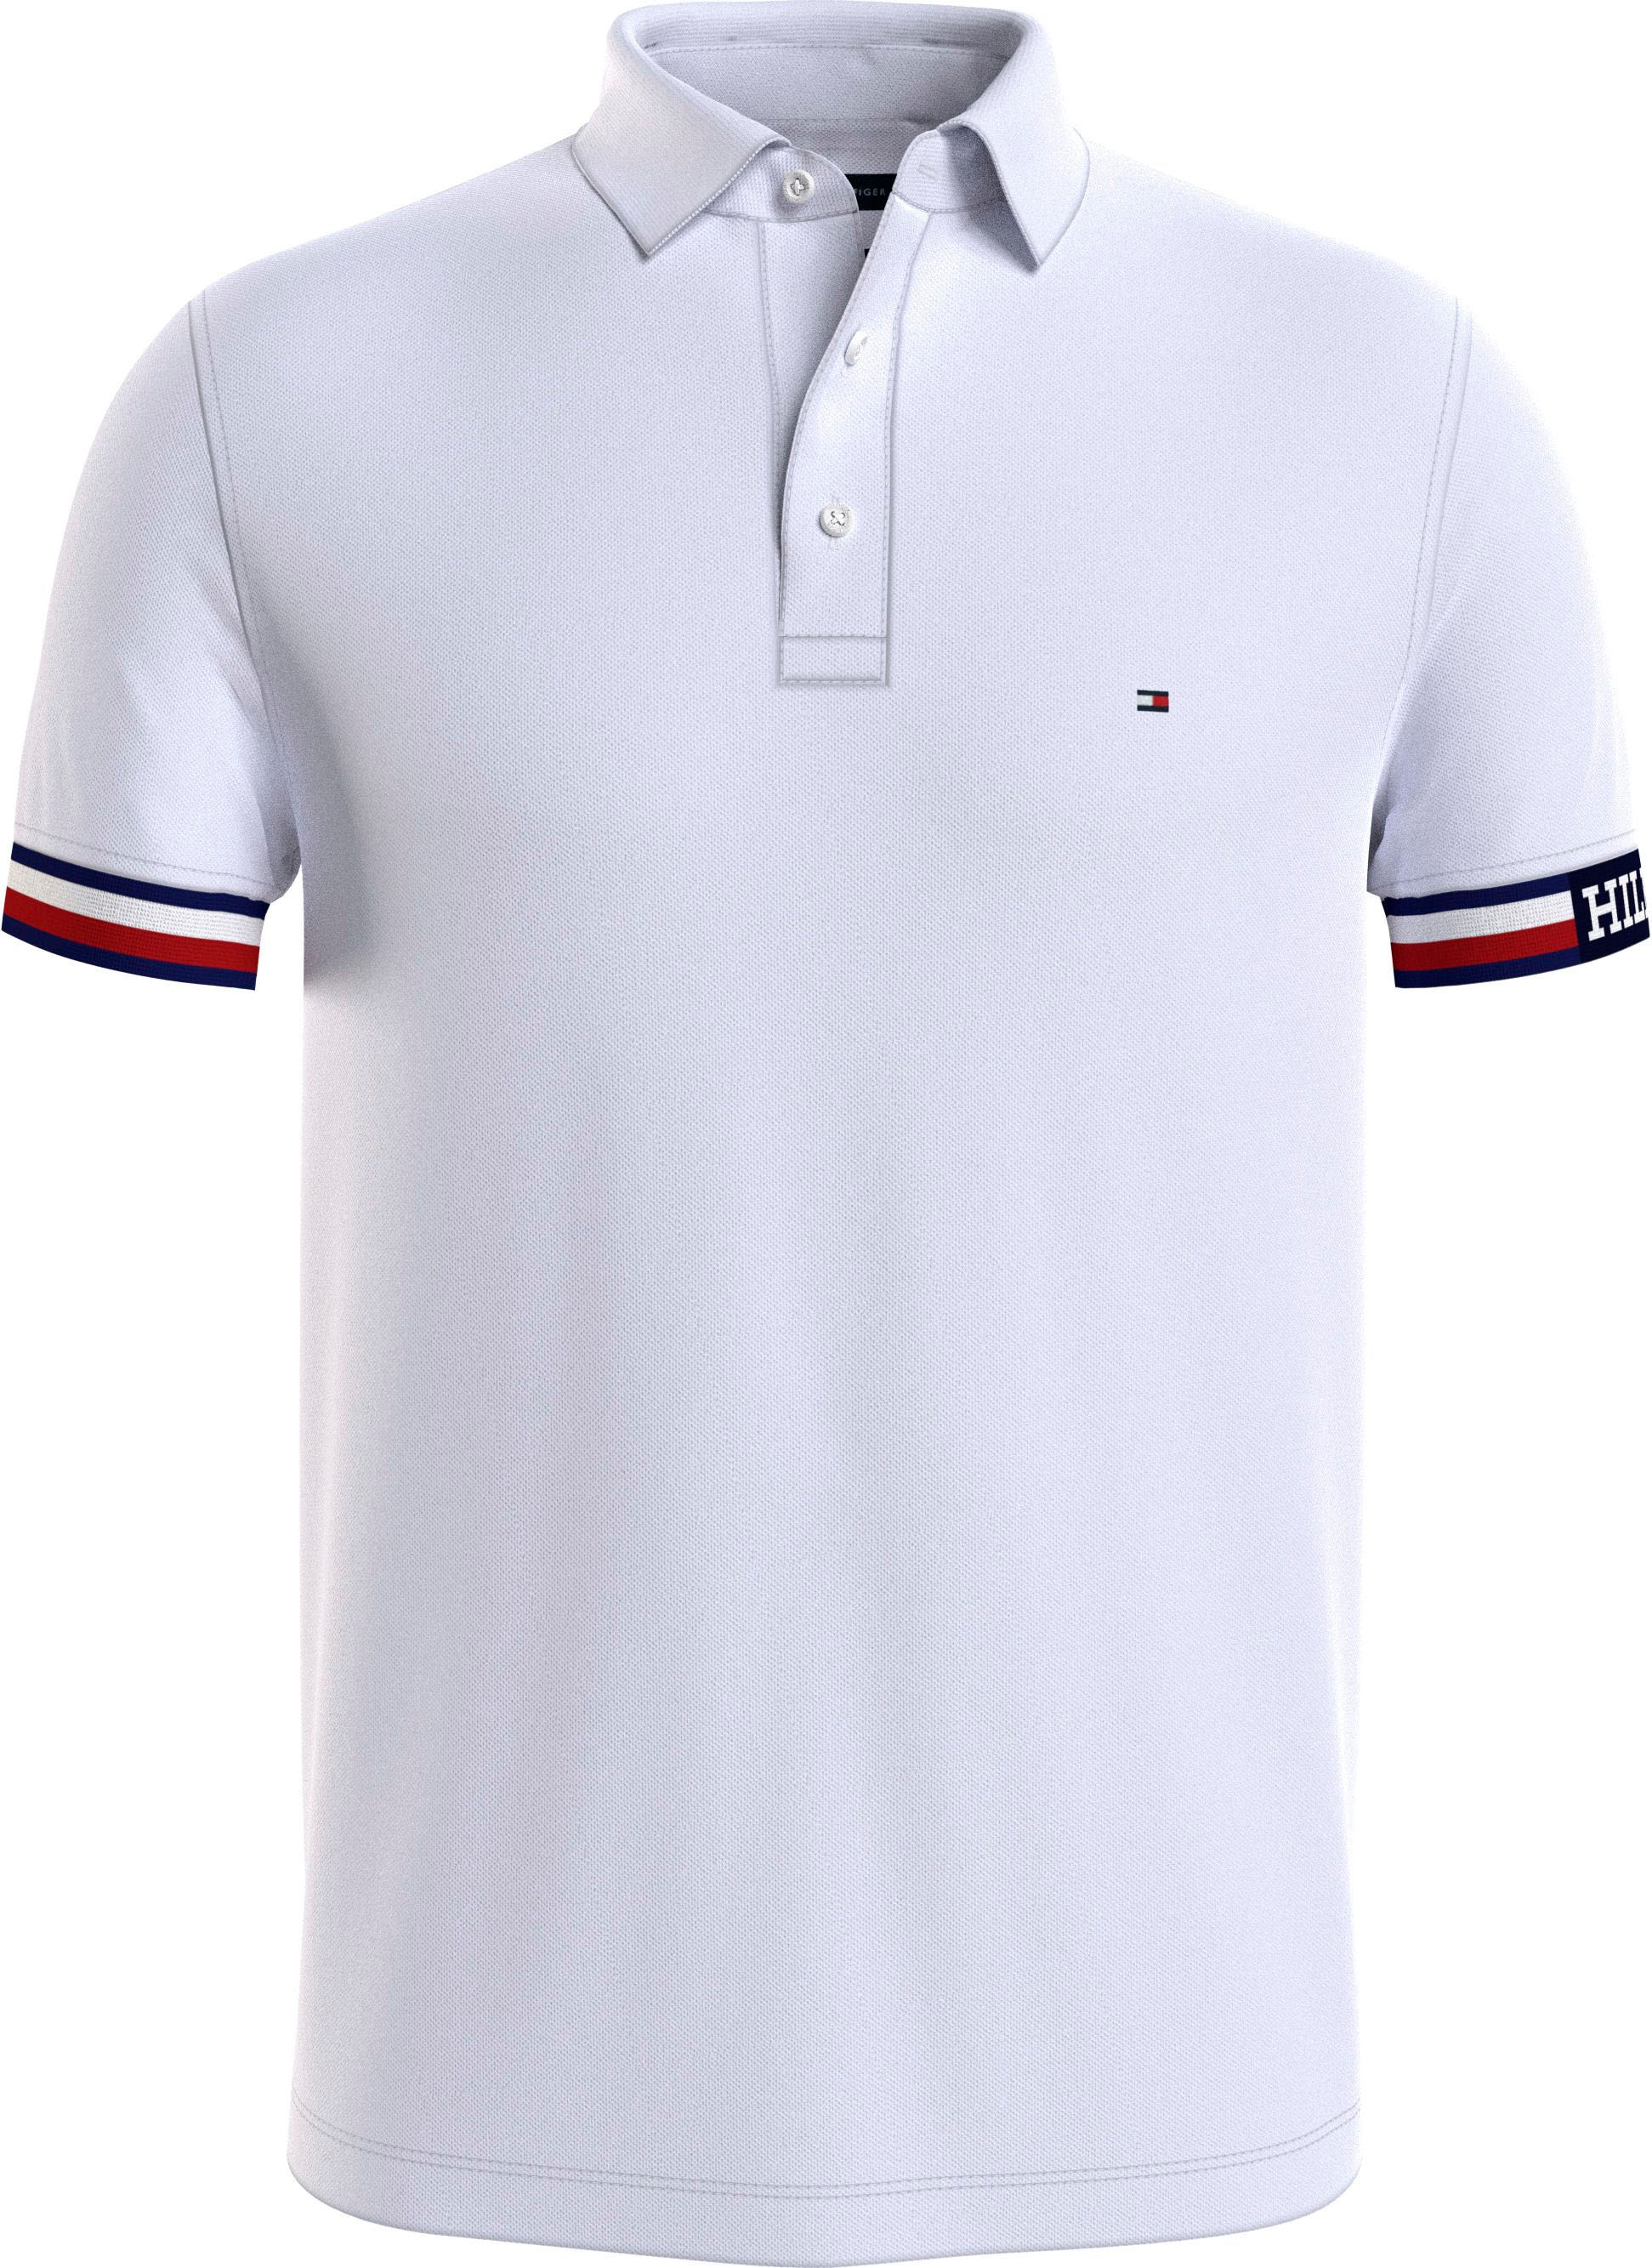 Coole Poloshirts online bestellen ▻ | Sport-Poloshirts